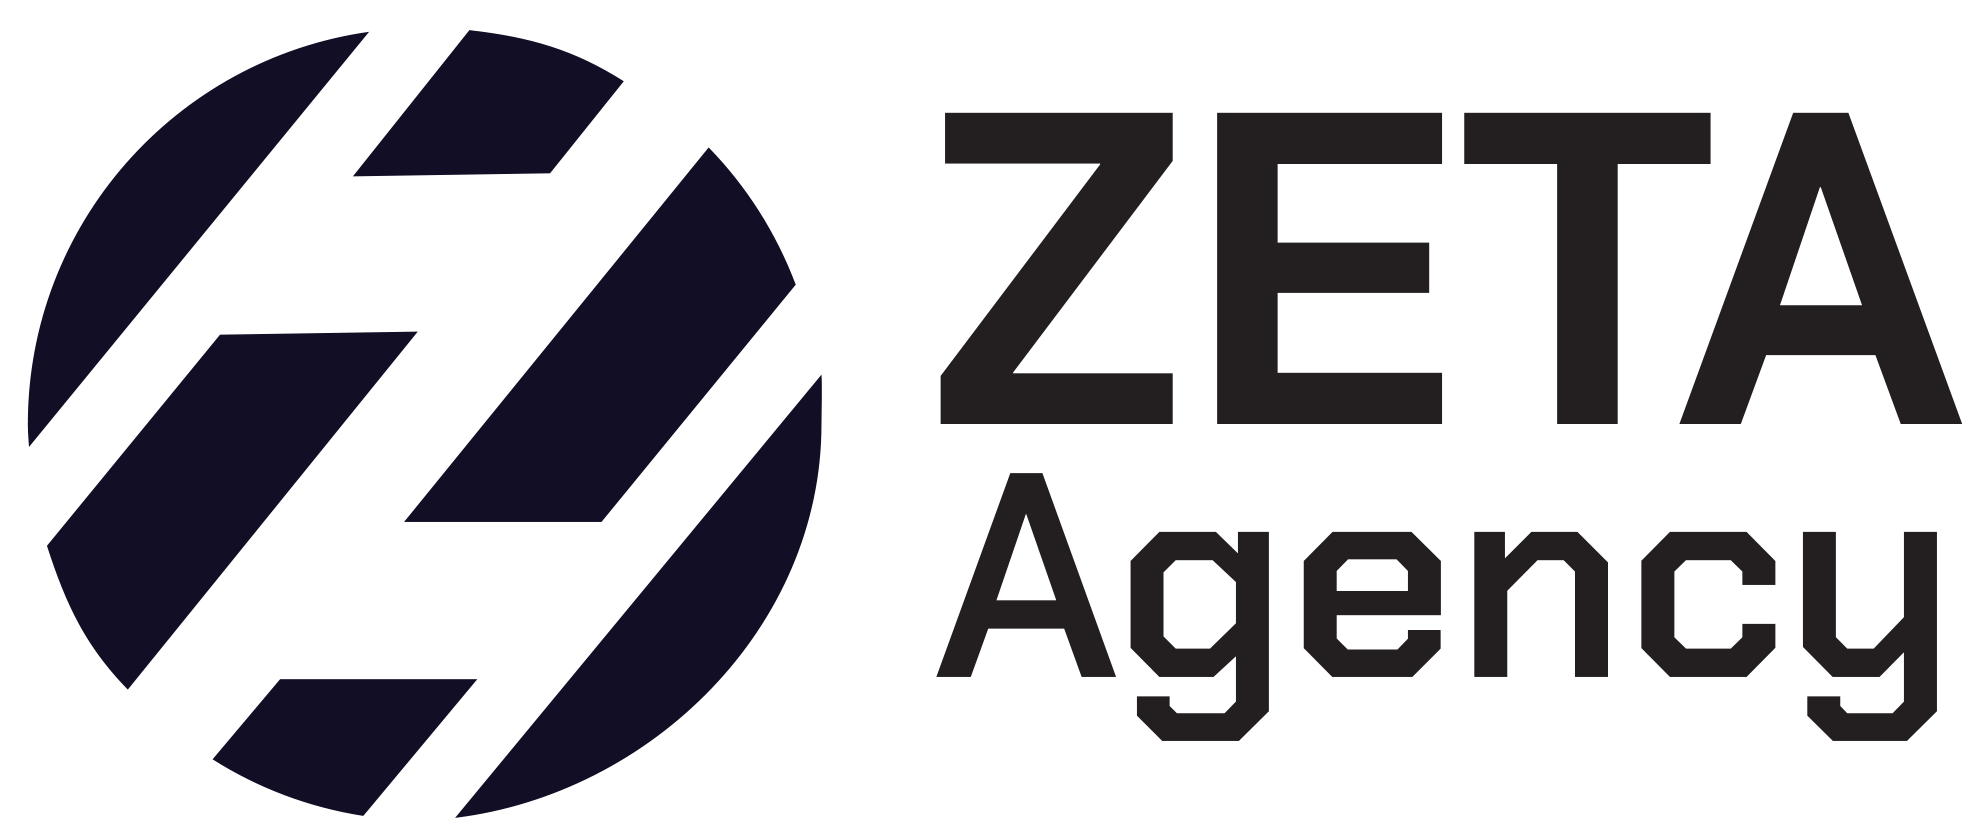 Zeta agency